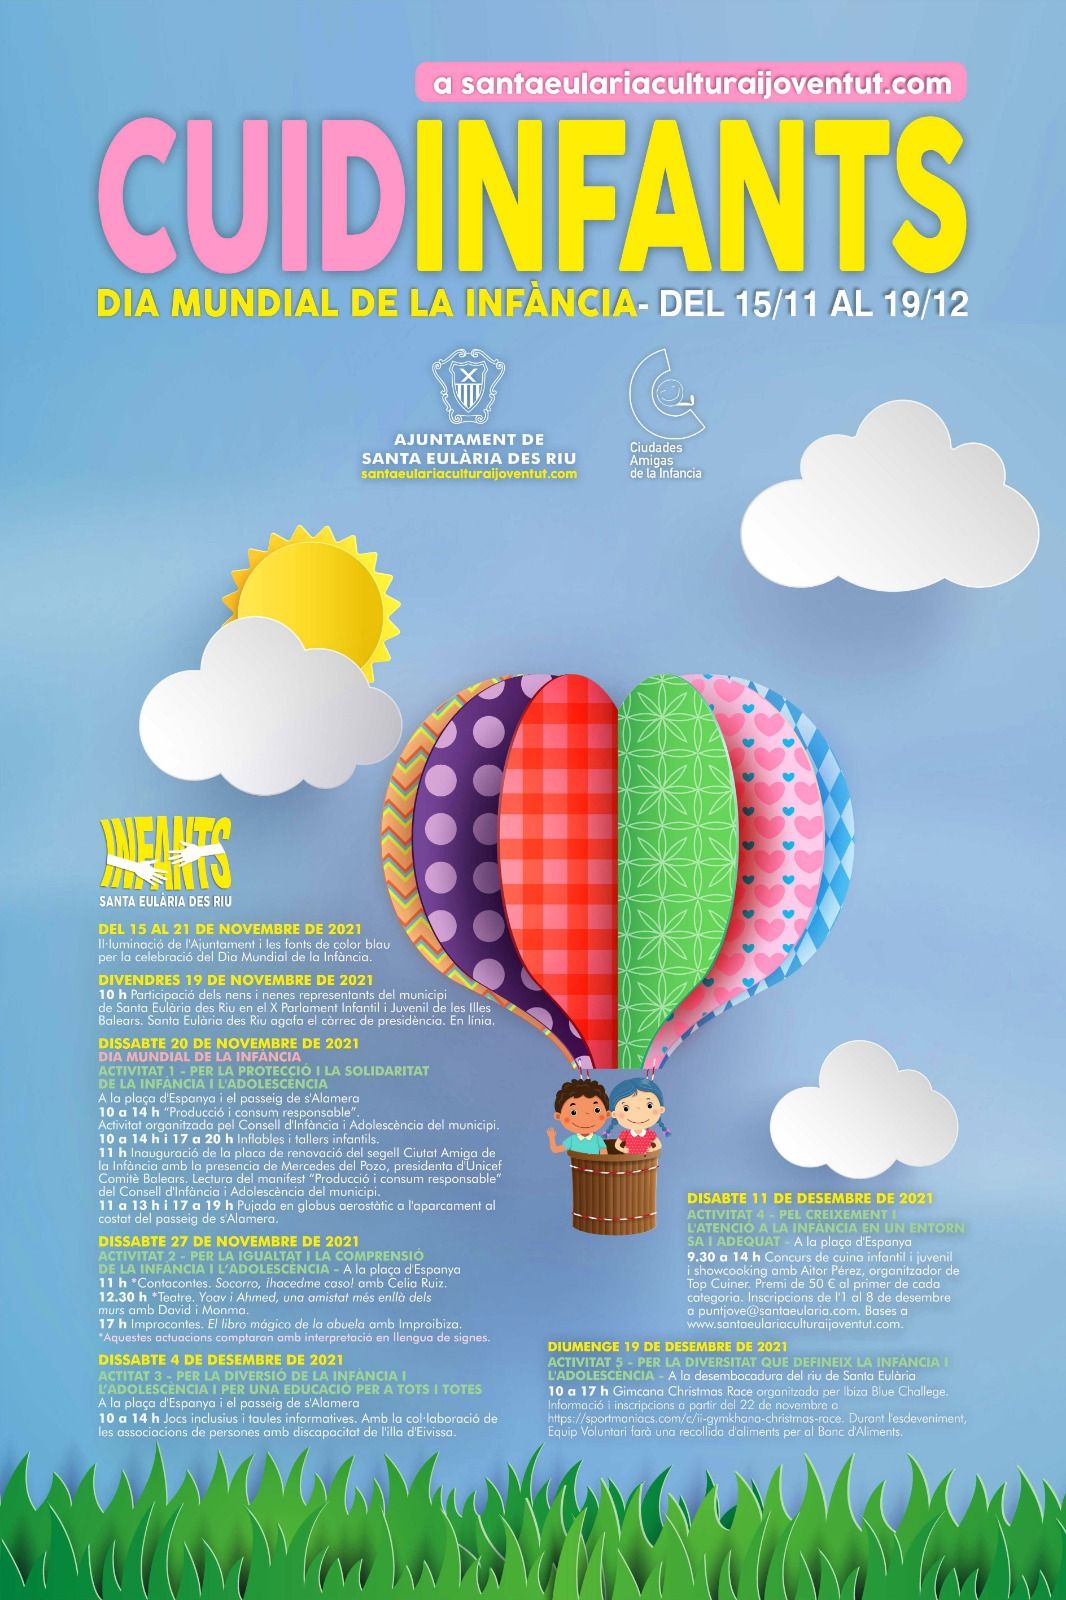 Santa Eulària celebra el Día Mundial de la Infancia con juegos y actividades sobre la igualdad, la inclusión y el desarrollo sostenible